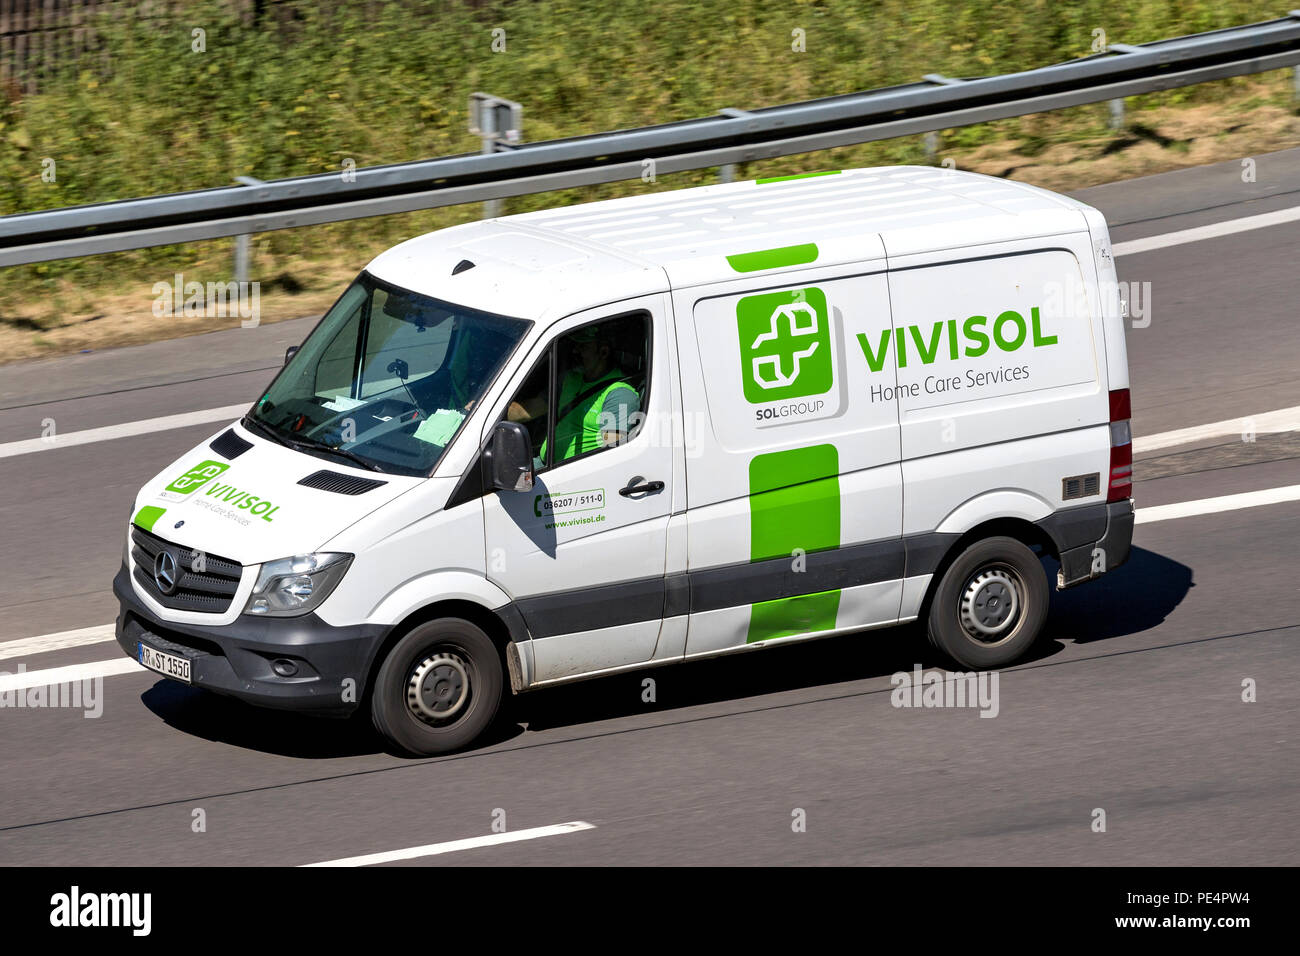 Vivisol van por la autopista. Vivisol es uno de los principales grupos europeos que trabajan en el sector de cuidado en el hogar Foto de stock